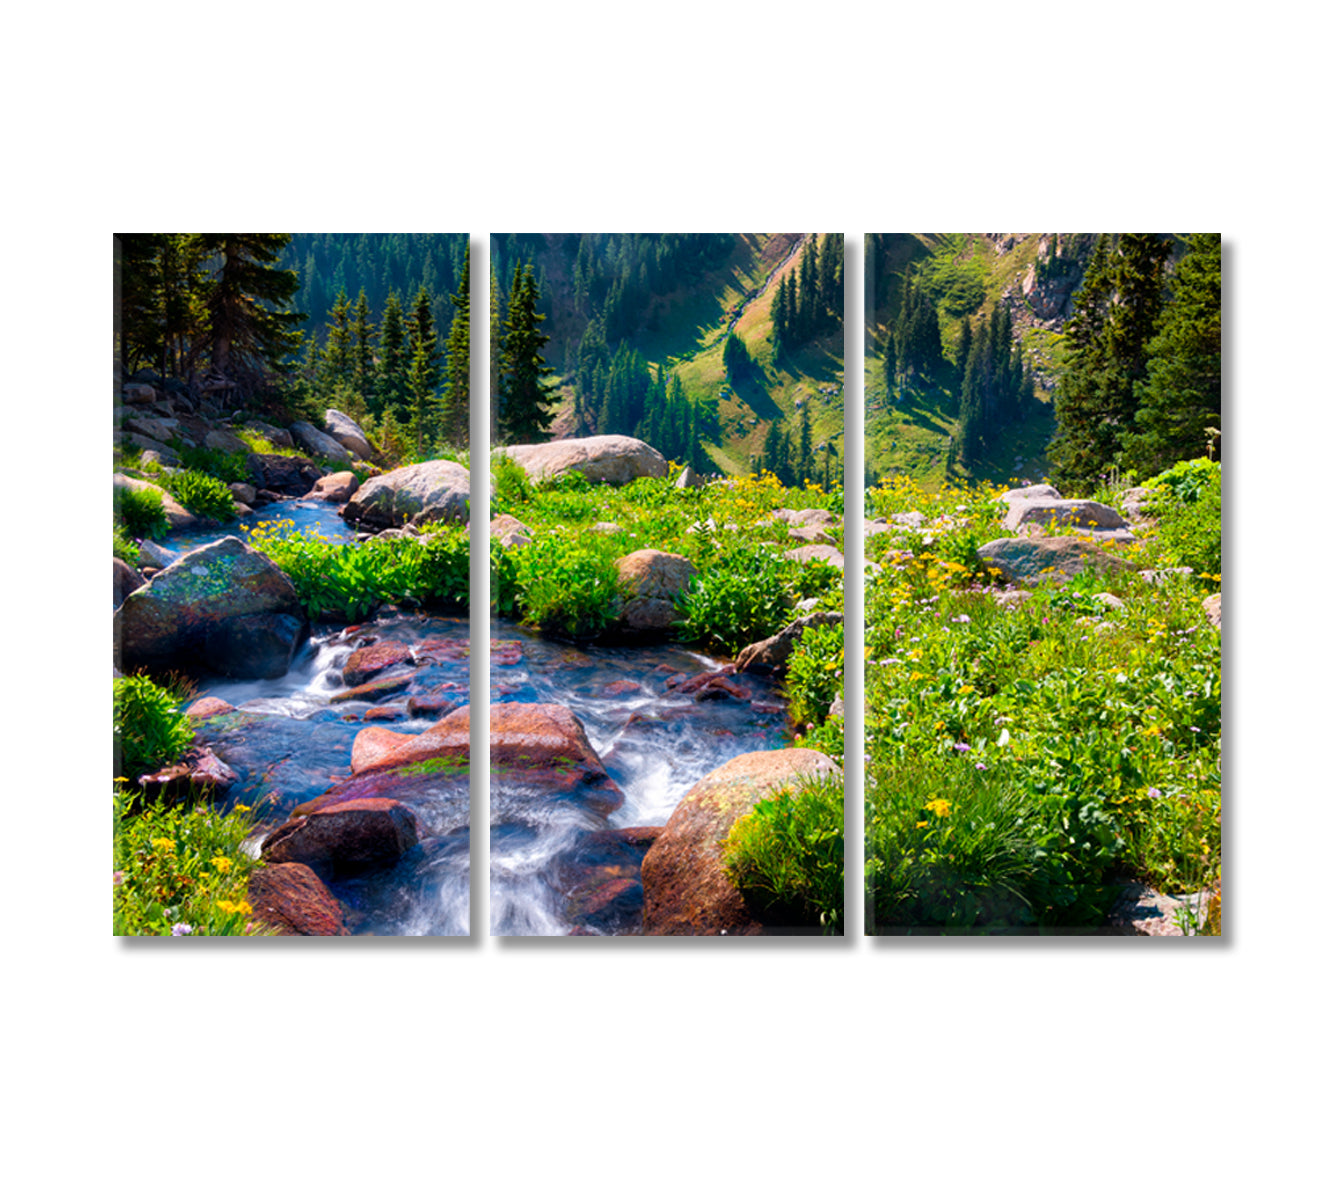 Nature Landscape with Boulder Creek River Canvas Print-Canvas Print-CetArt-3 Panels-36x24 inches-CetArt